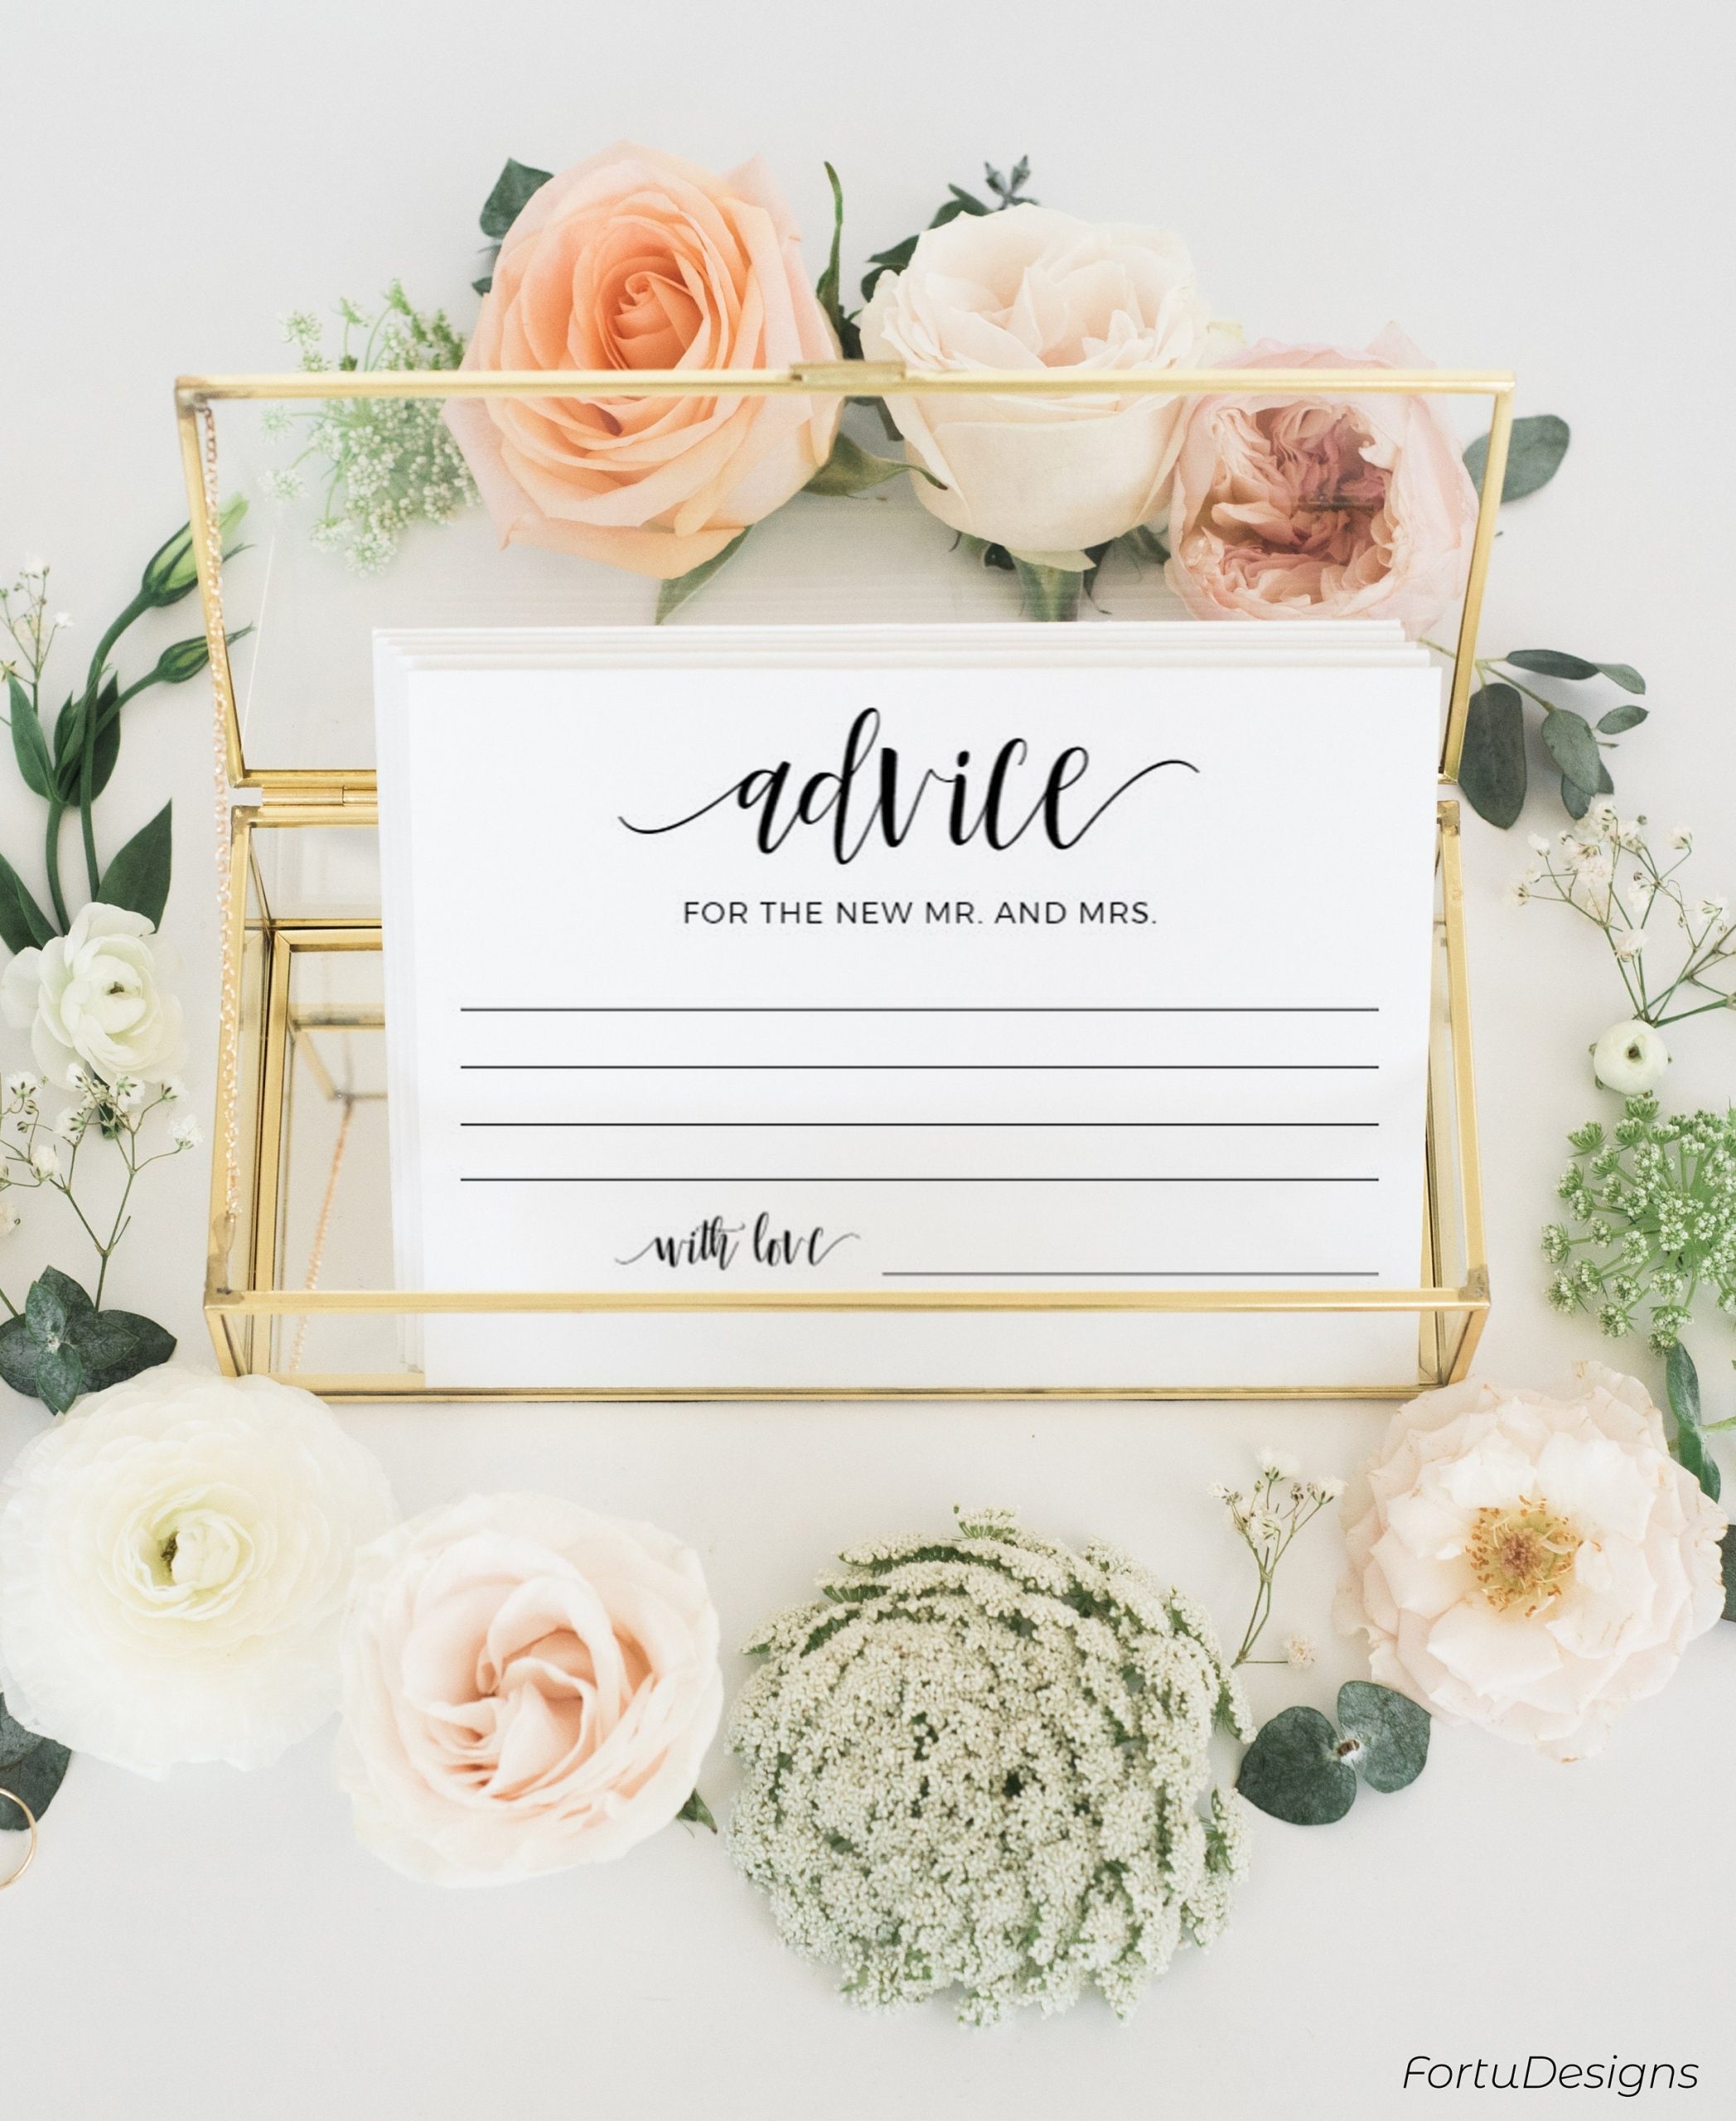 Wedding Advice Cards Template Rustic Advice Cards Marriage | Etsy Inside Marriage Advice Cards Templates